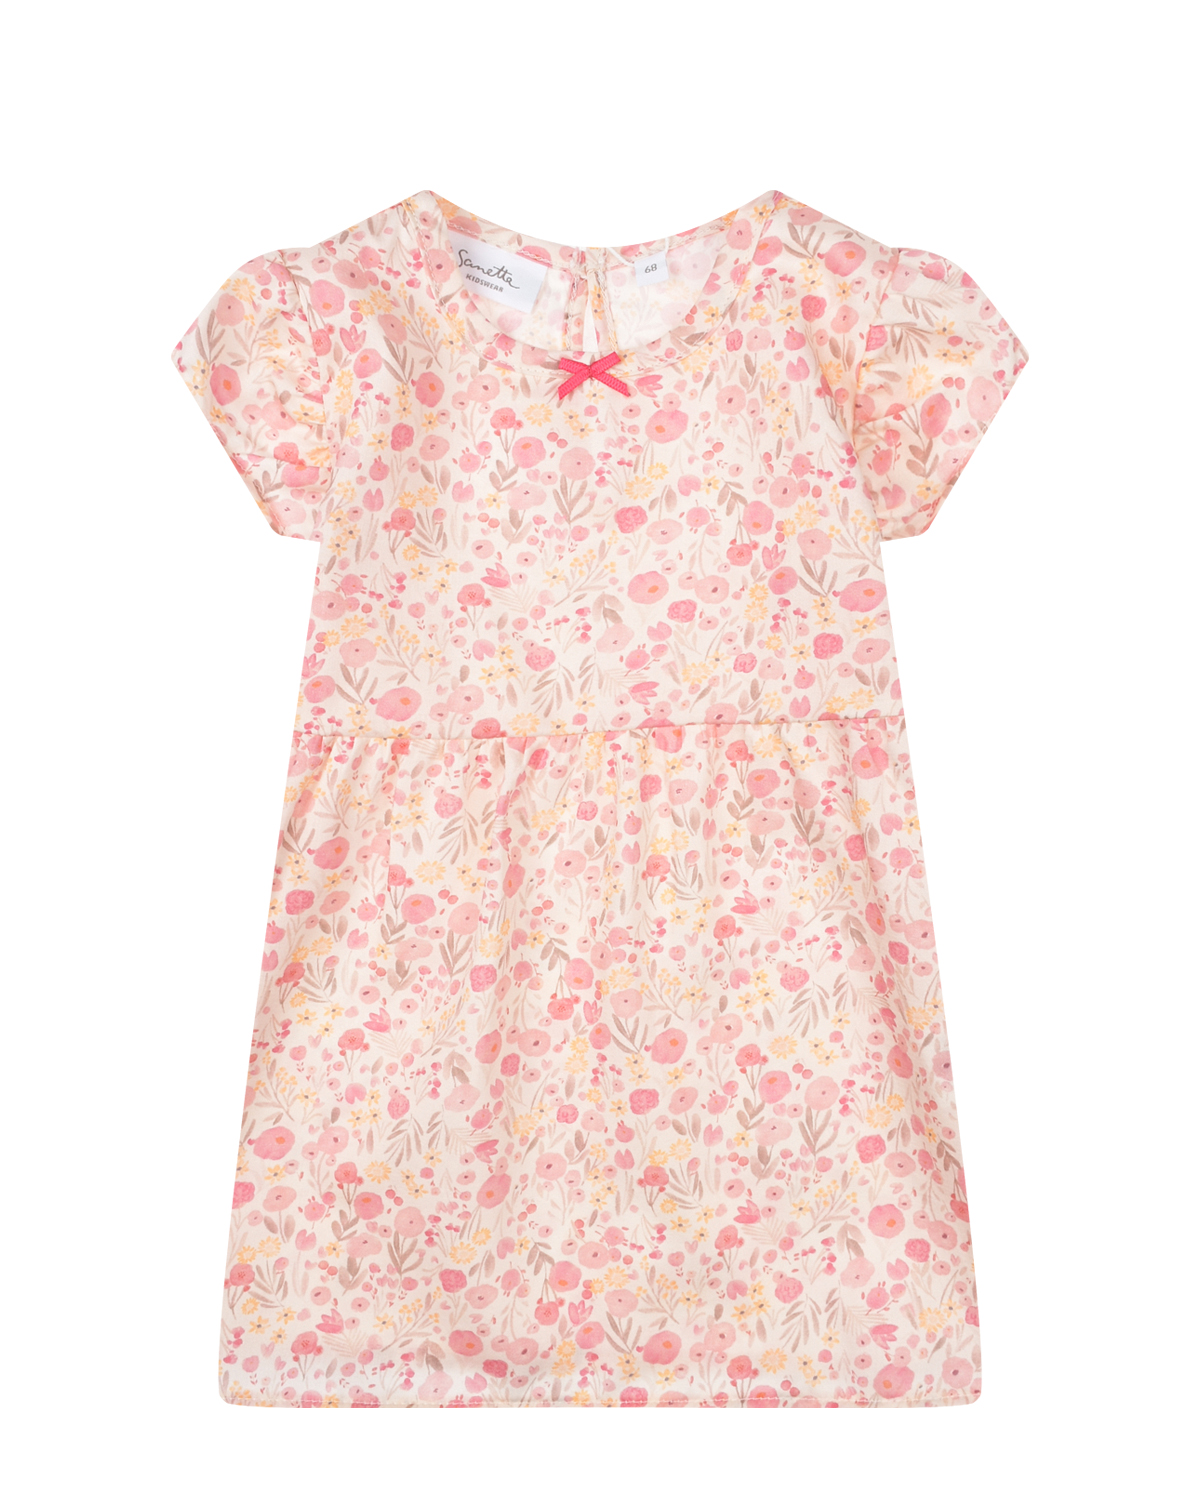 Розовое платье с цветочным принтом Sanetta Kidswear платье для собак кулирка xs дс 24 ош 32 36 ог 34 38 розовое с серыми полосками